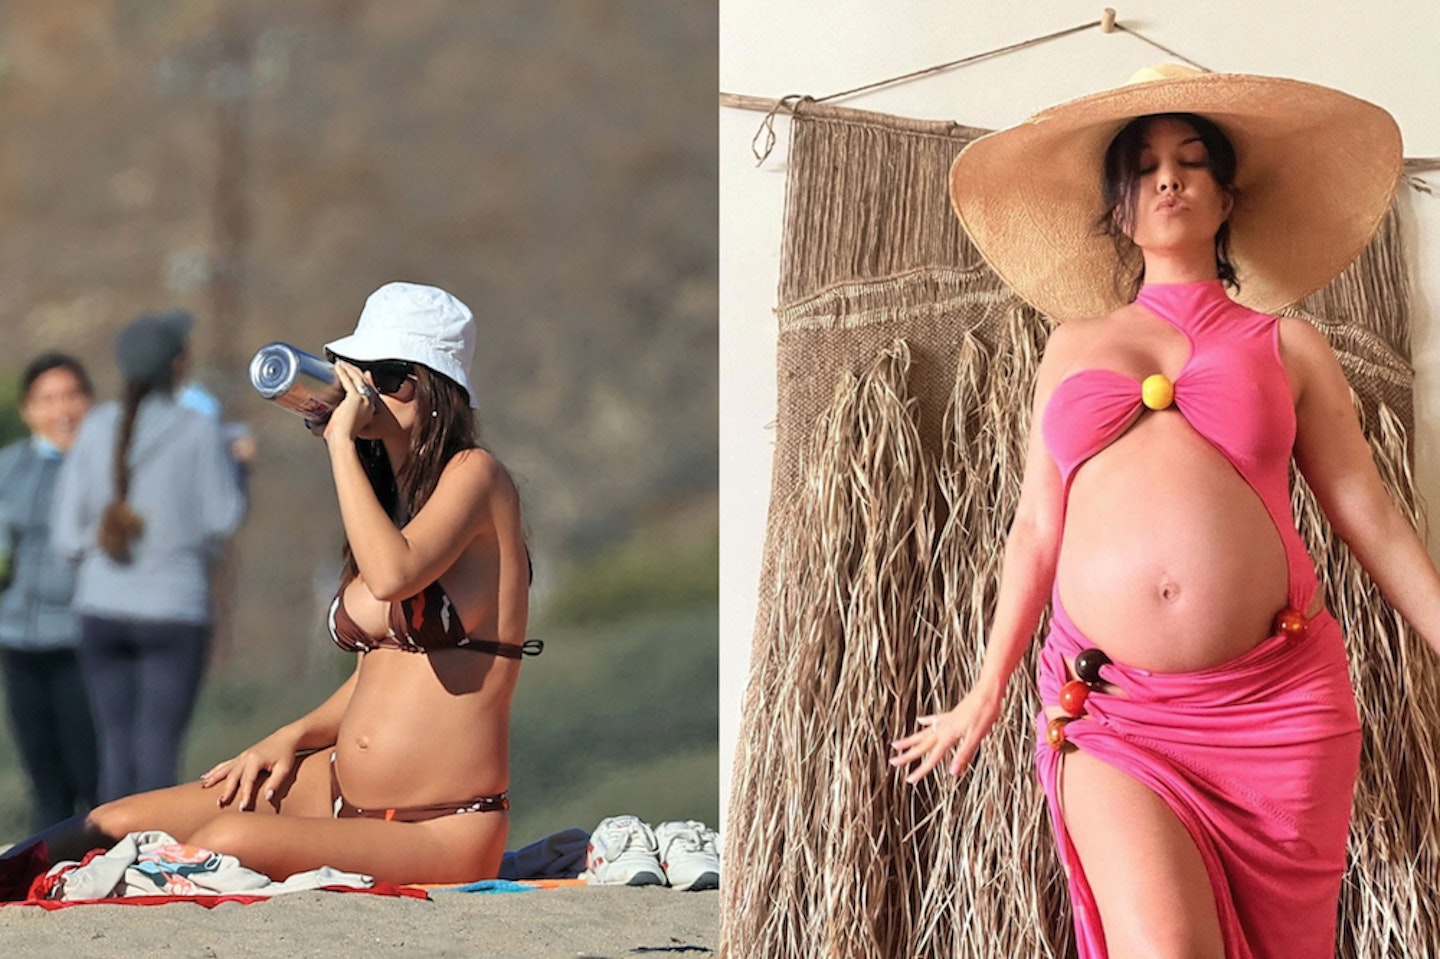 Emily Ratajkowski and Kourtney Kardashian in maternity swimwear